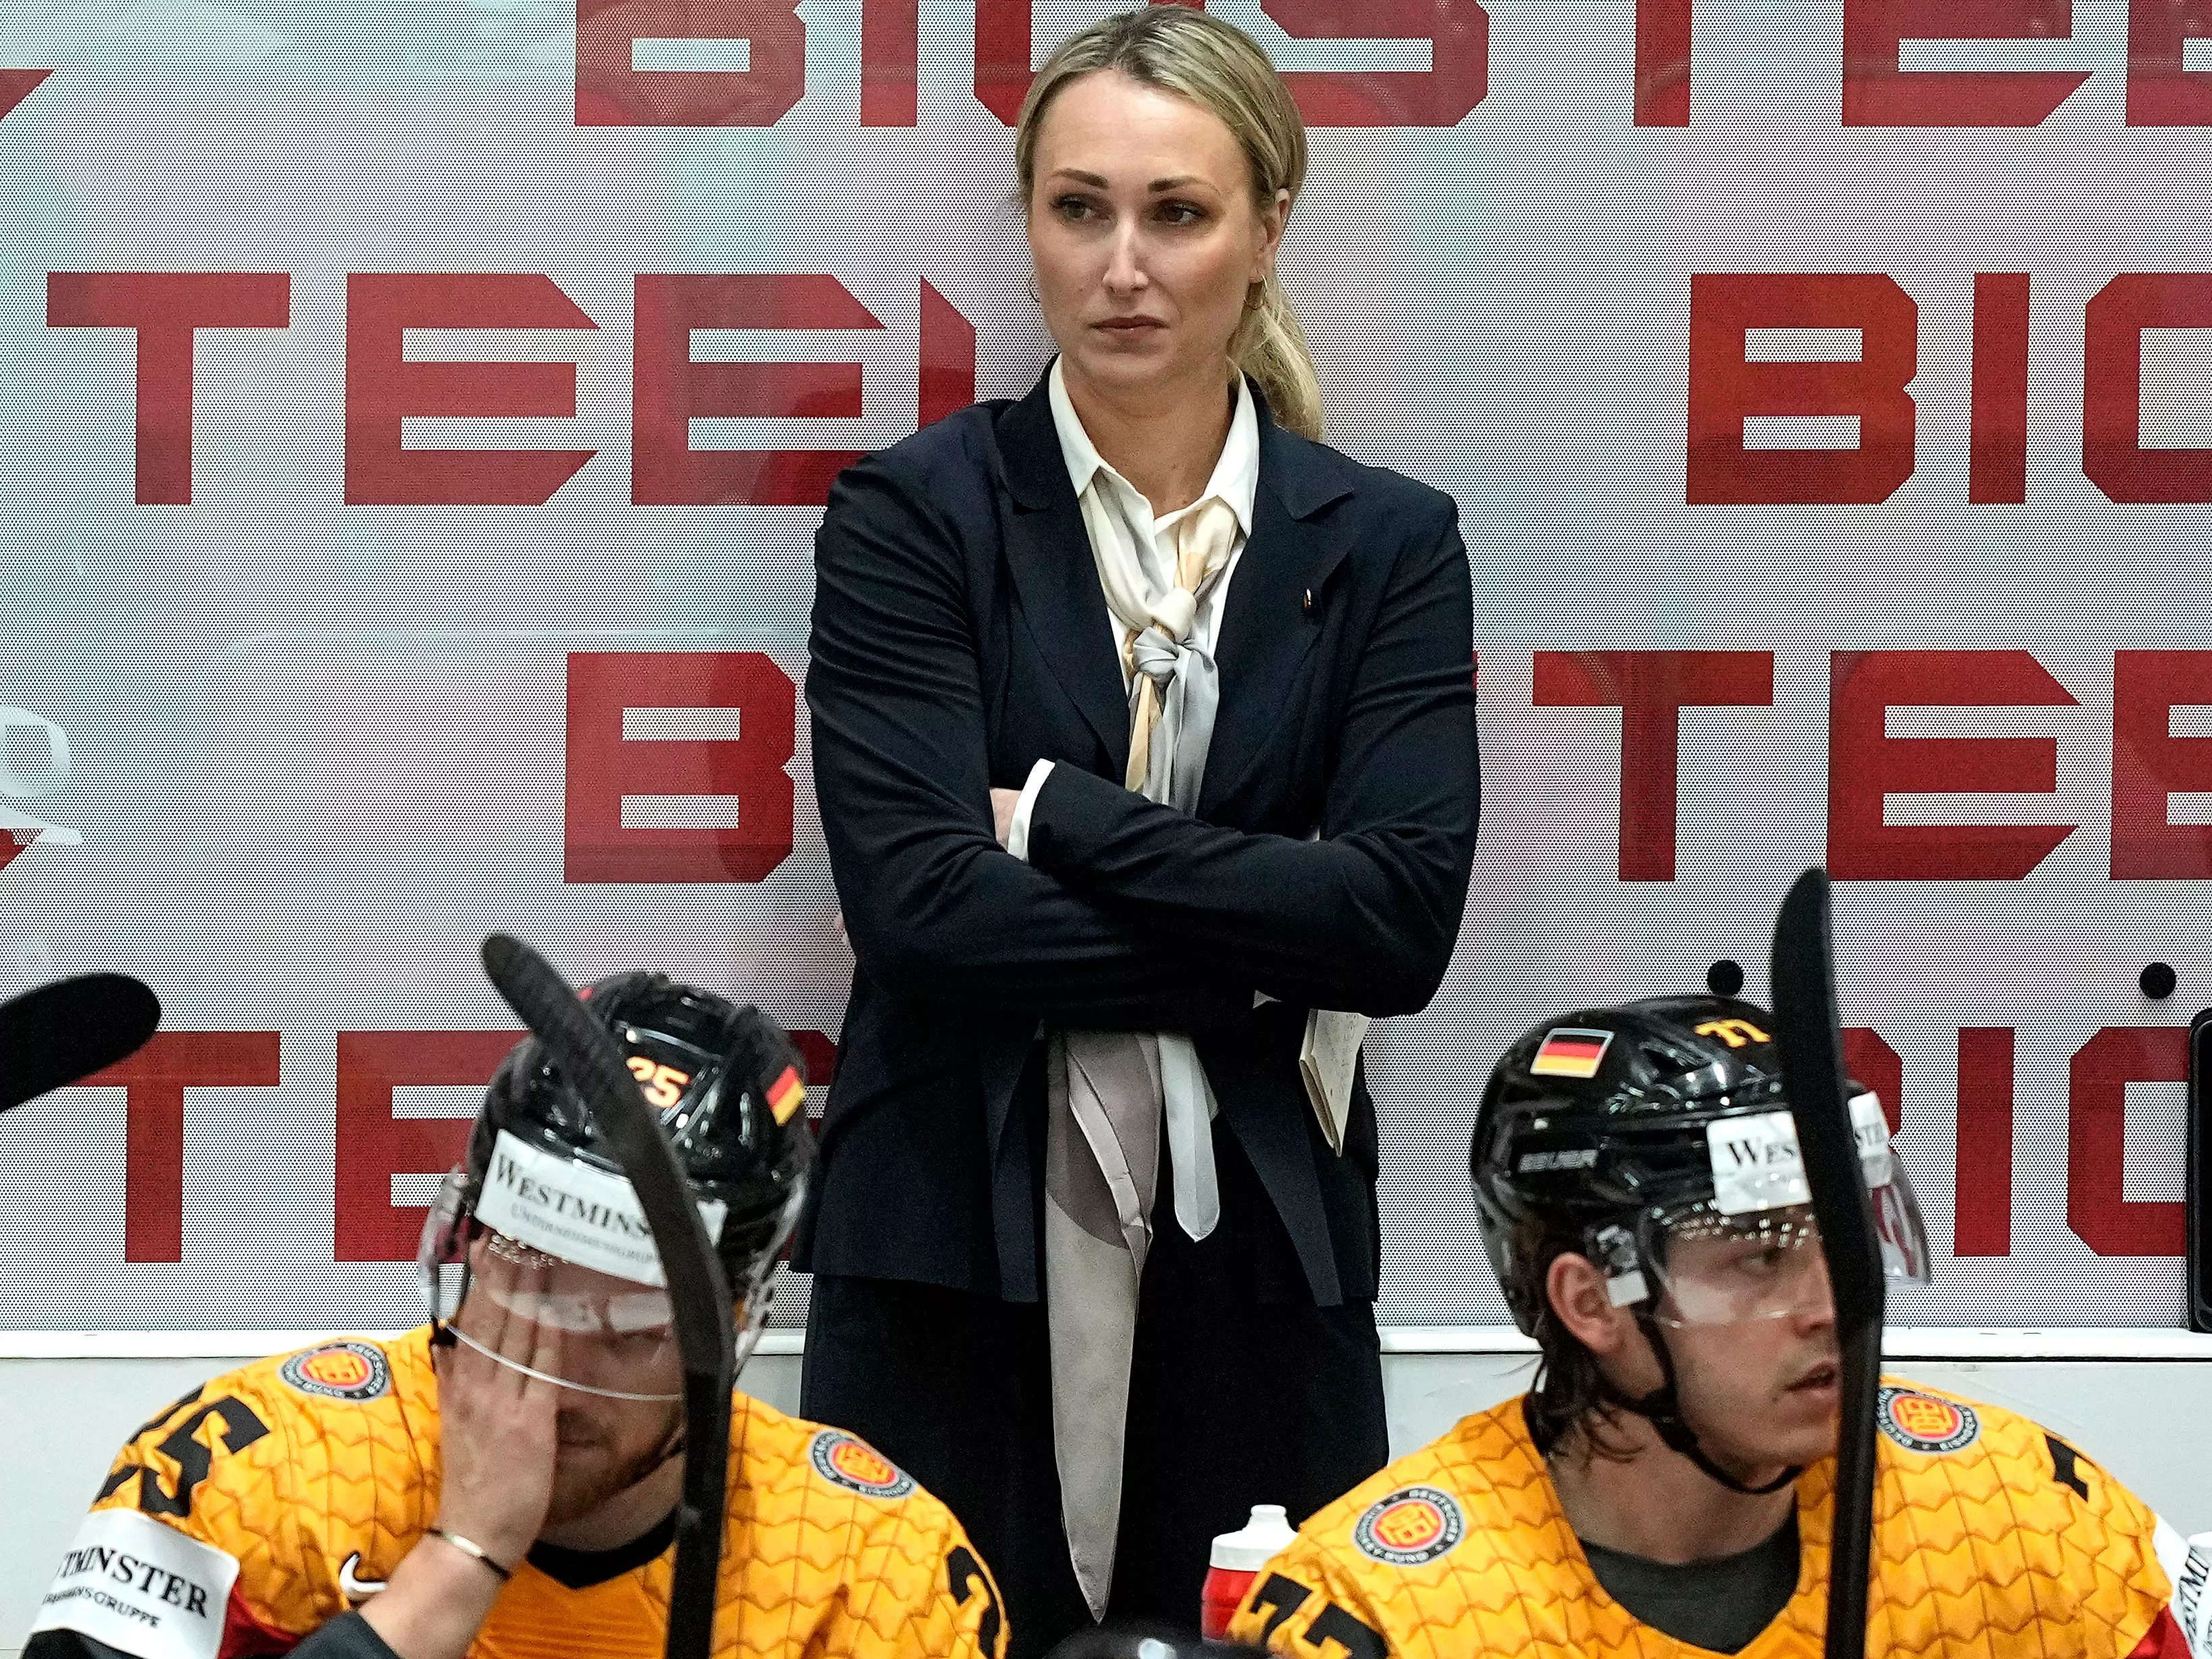 Ein Fernsehreporter fragte die bahnbrechende Trainerin der deutschen Nationalmannschaft, wie es sei, eine „schöne Frau“ in einem Eishockeyteam „voller attraktiver Männer“ zu sein.